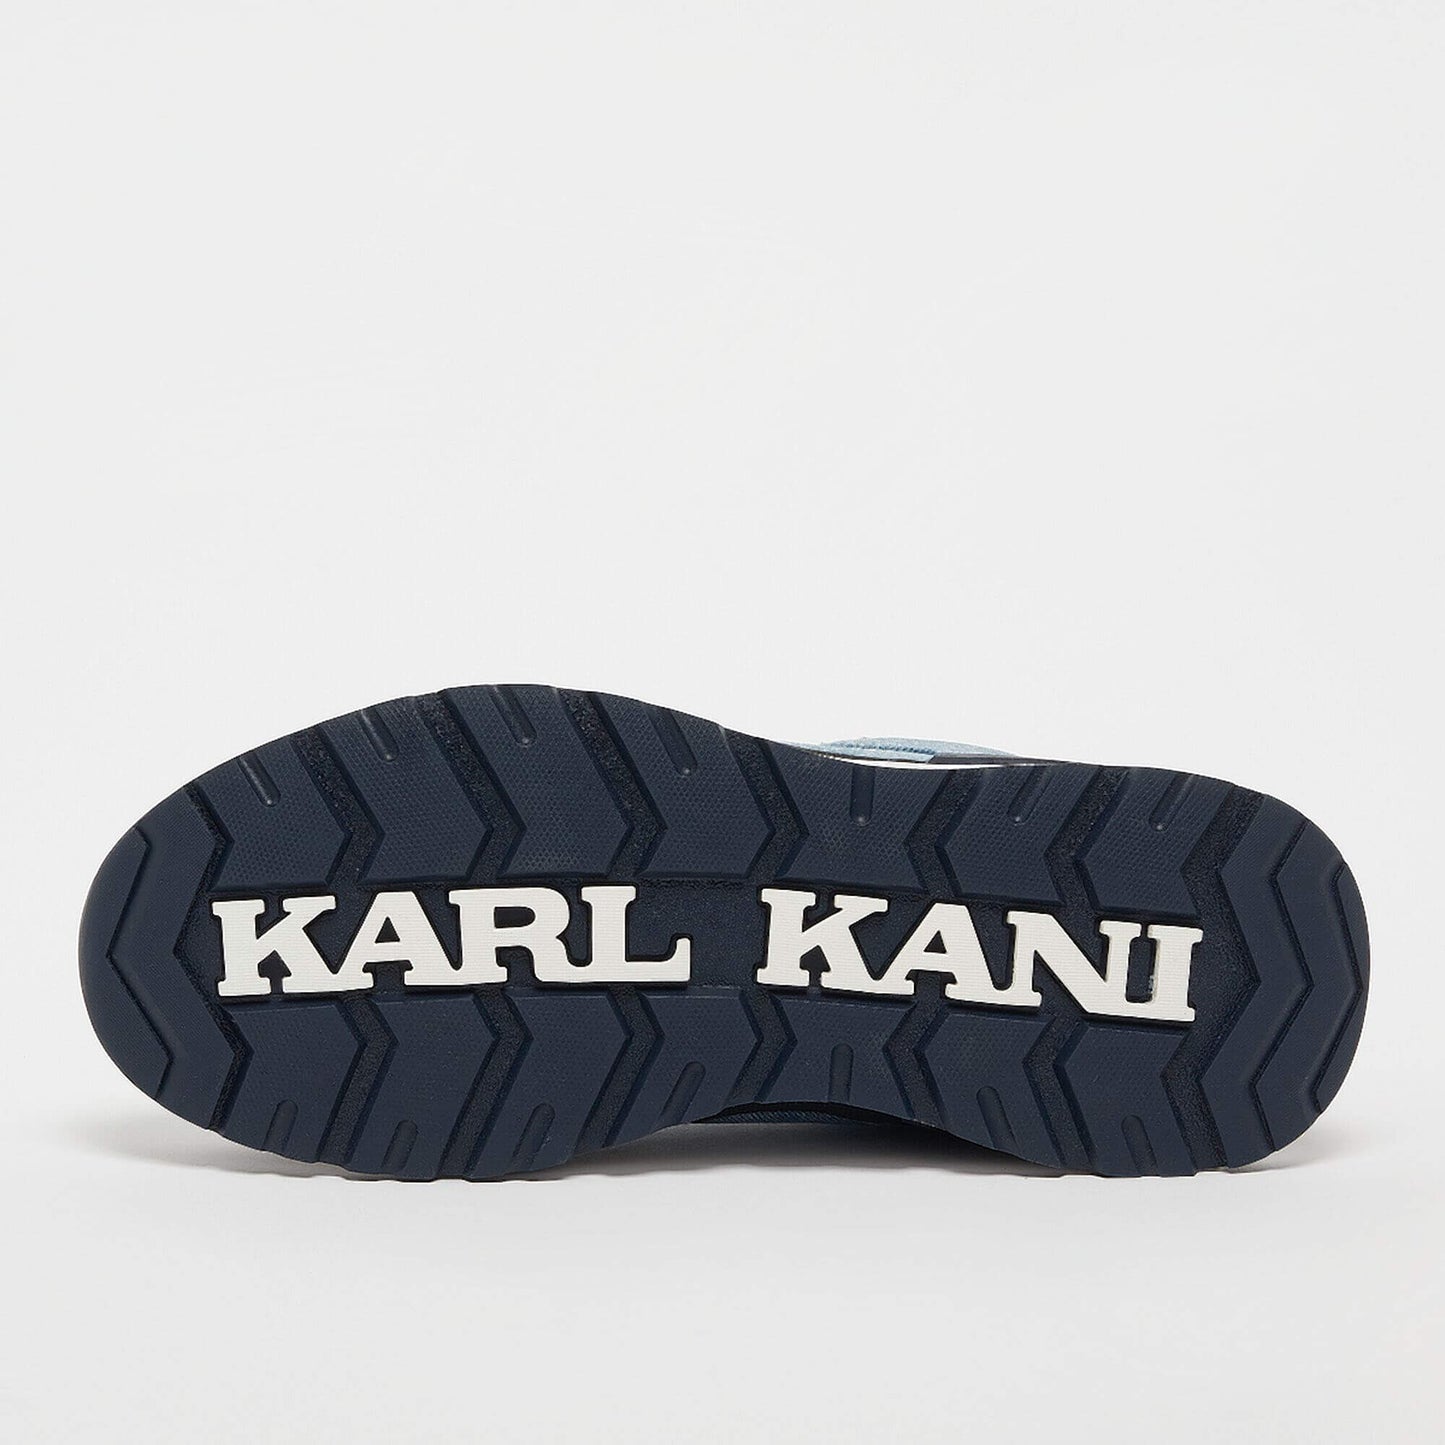 Karl Kani KK LXRY Boot denim/blue